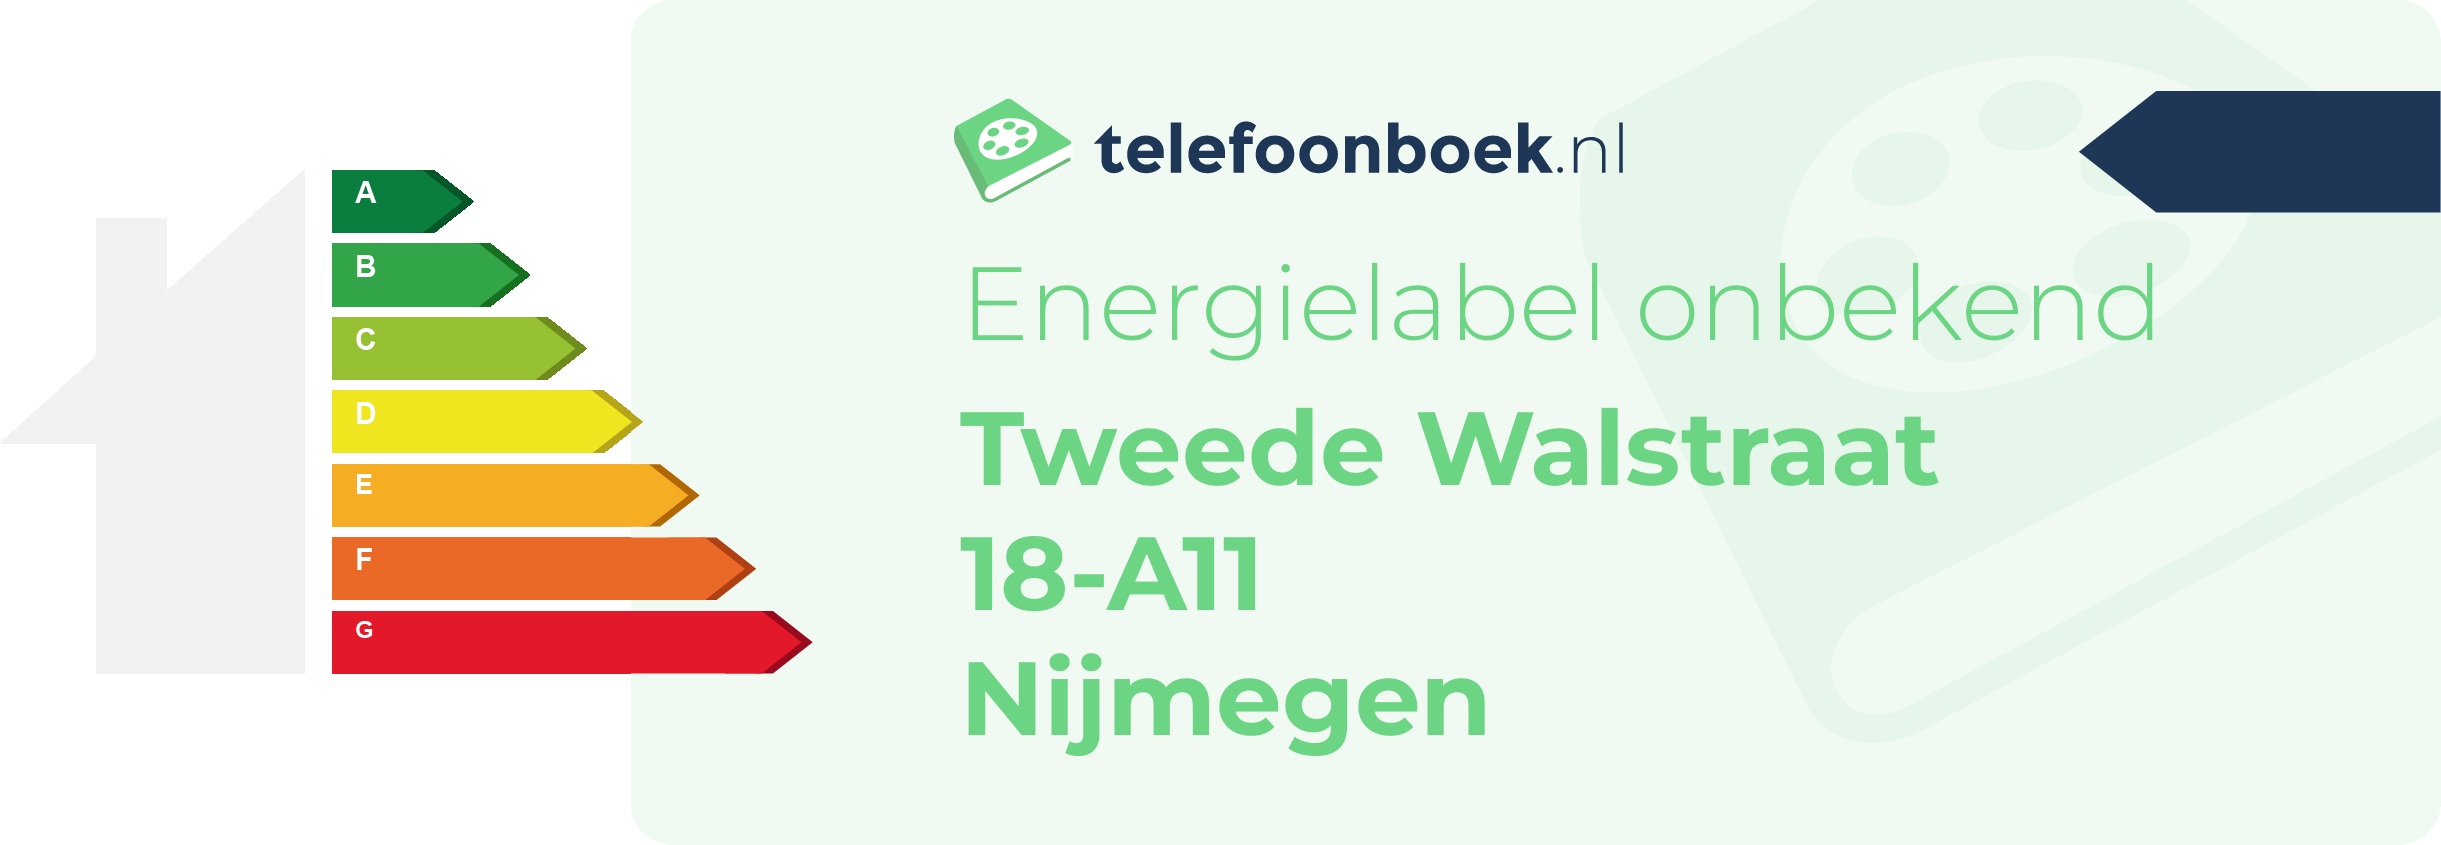 Energielabel Tweede Walstraat 18-A11 Nijmegen